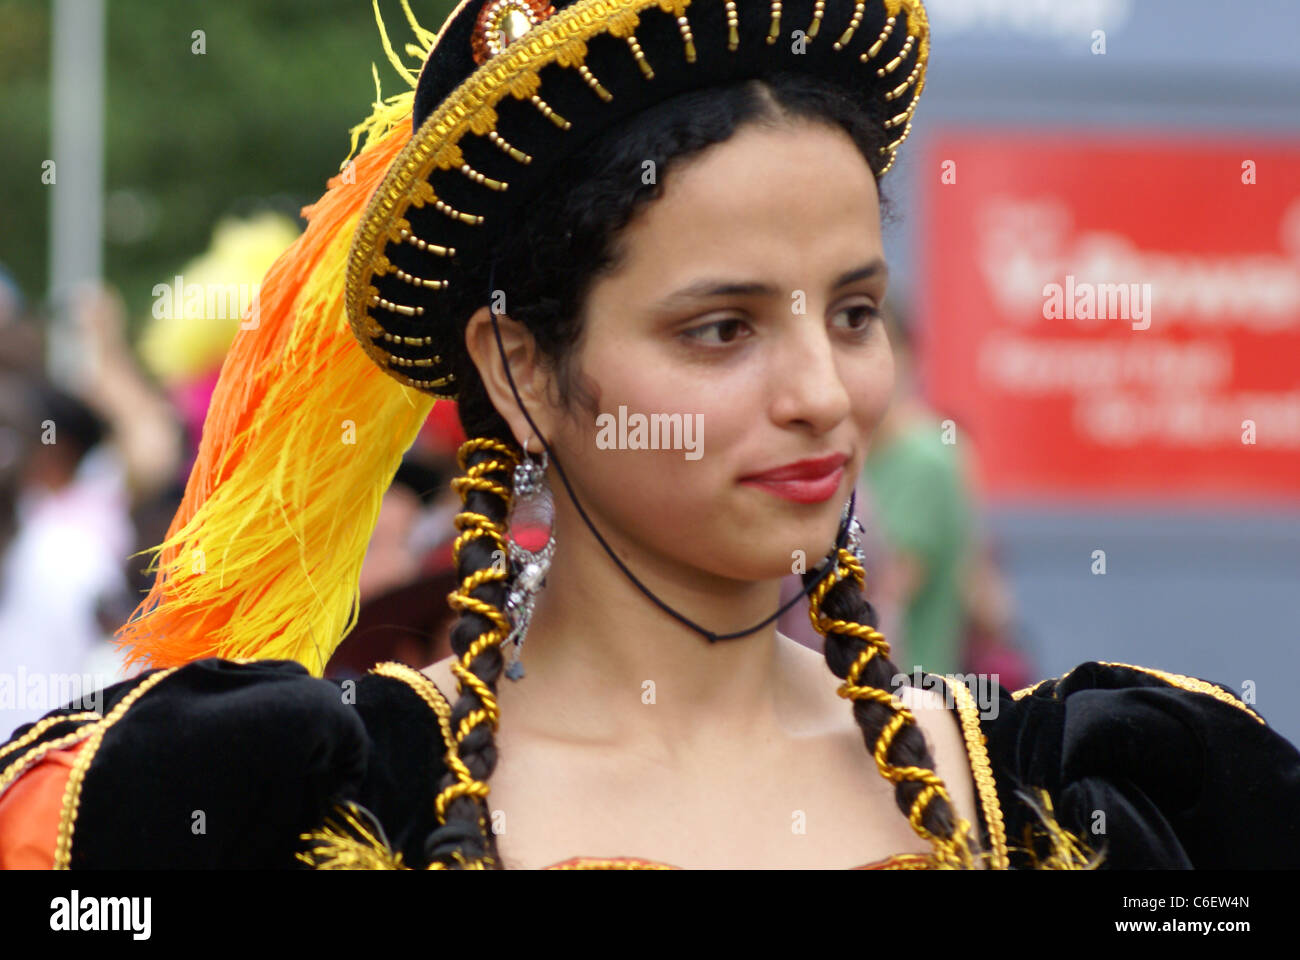 Attore nel carnevale del Pueblo, in Europa la più grande celebrazione della cultura latino-americana. Foto Stock